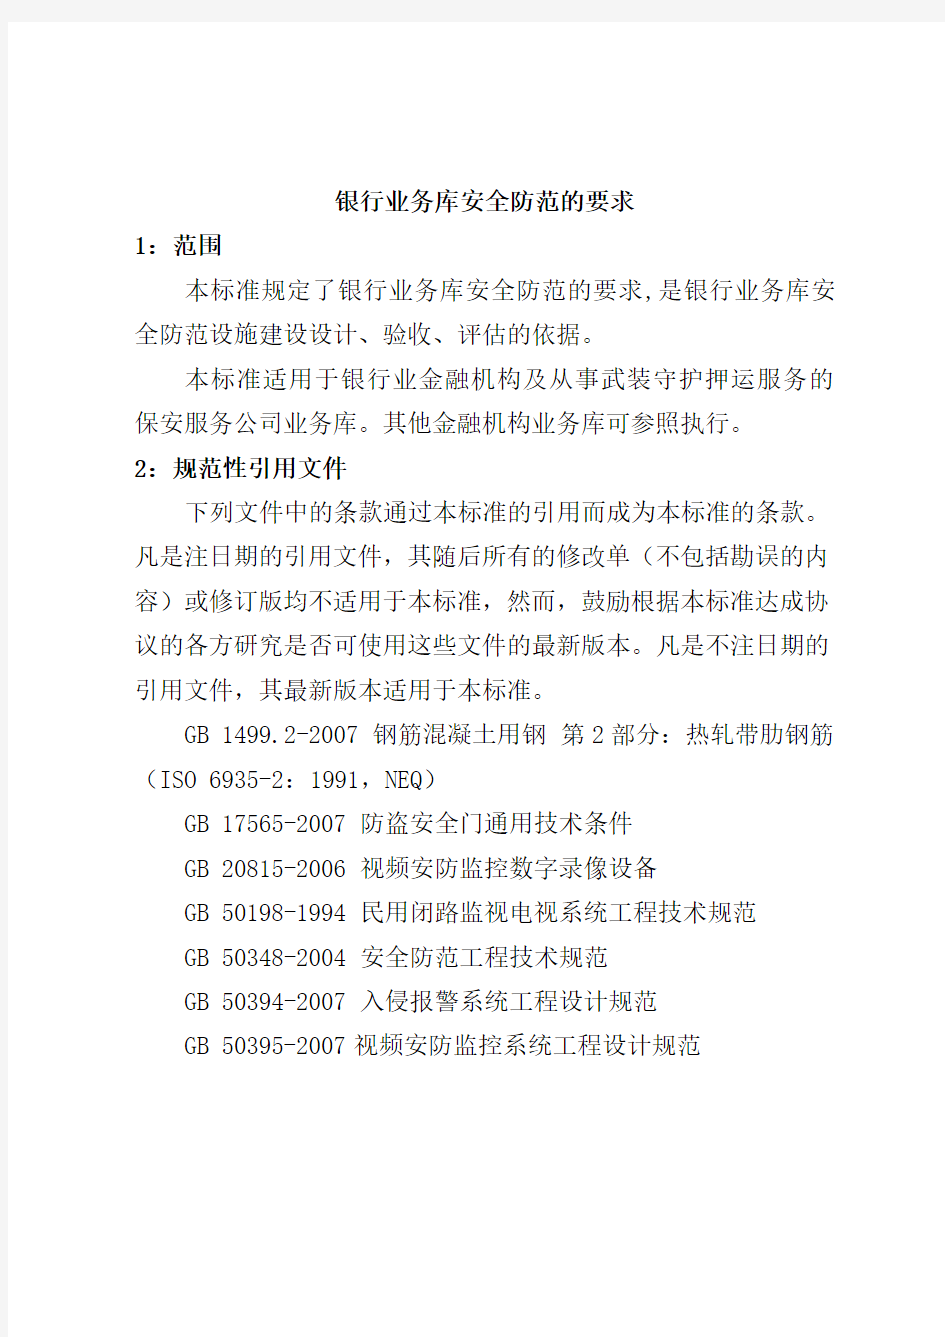 中华人民共和国公安部《银行业务库安全防范的要求(GA858-2010)》